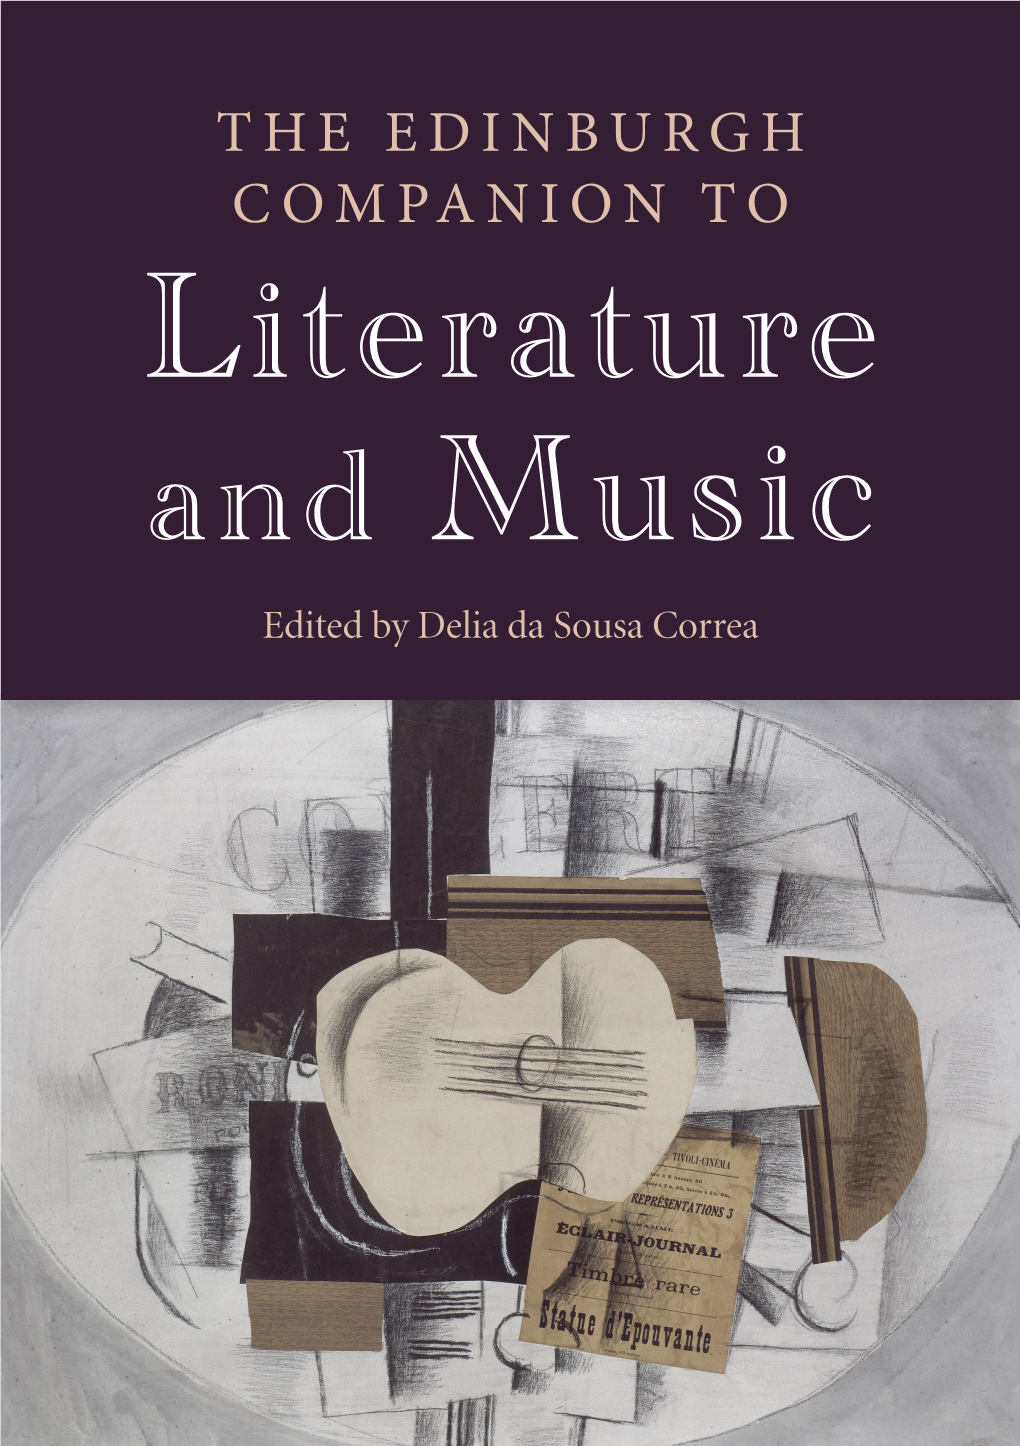 THE EDINBURGH COMPANION to Literature and Music Edited by Delia Da Sousa Correa the Edinburgh Companion to Literature and Music